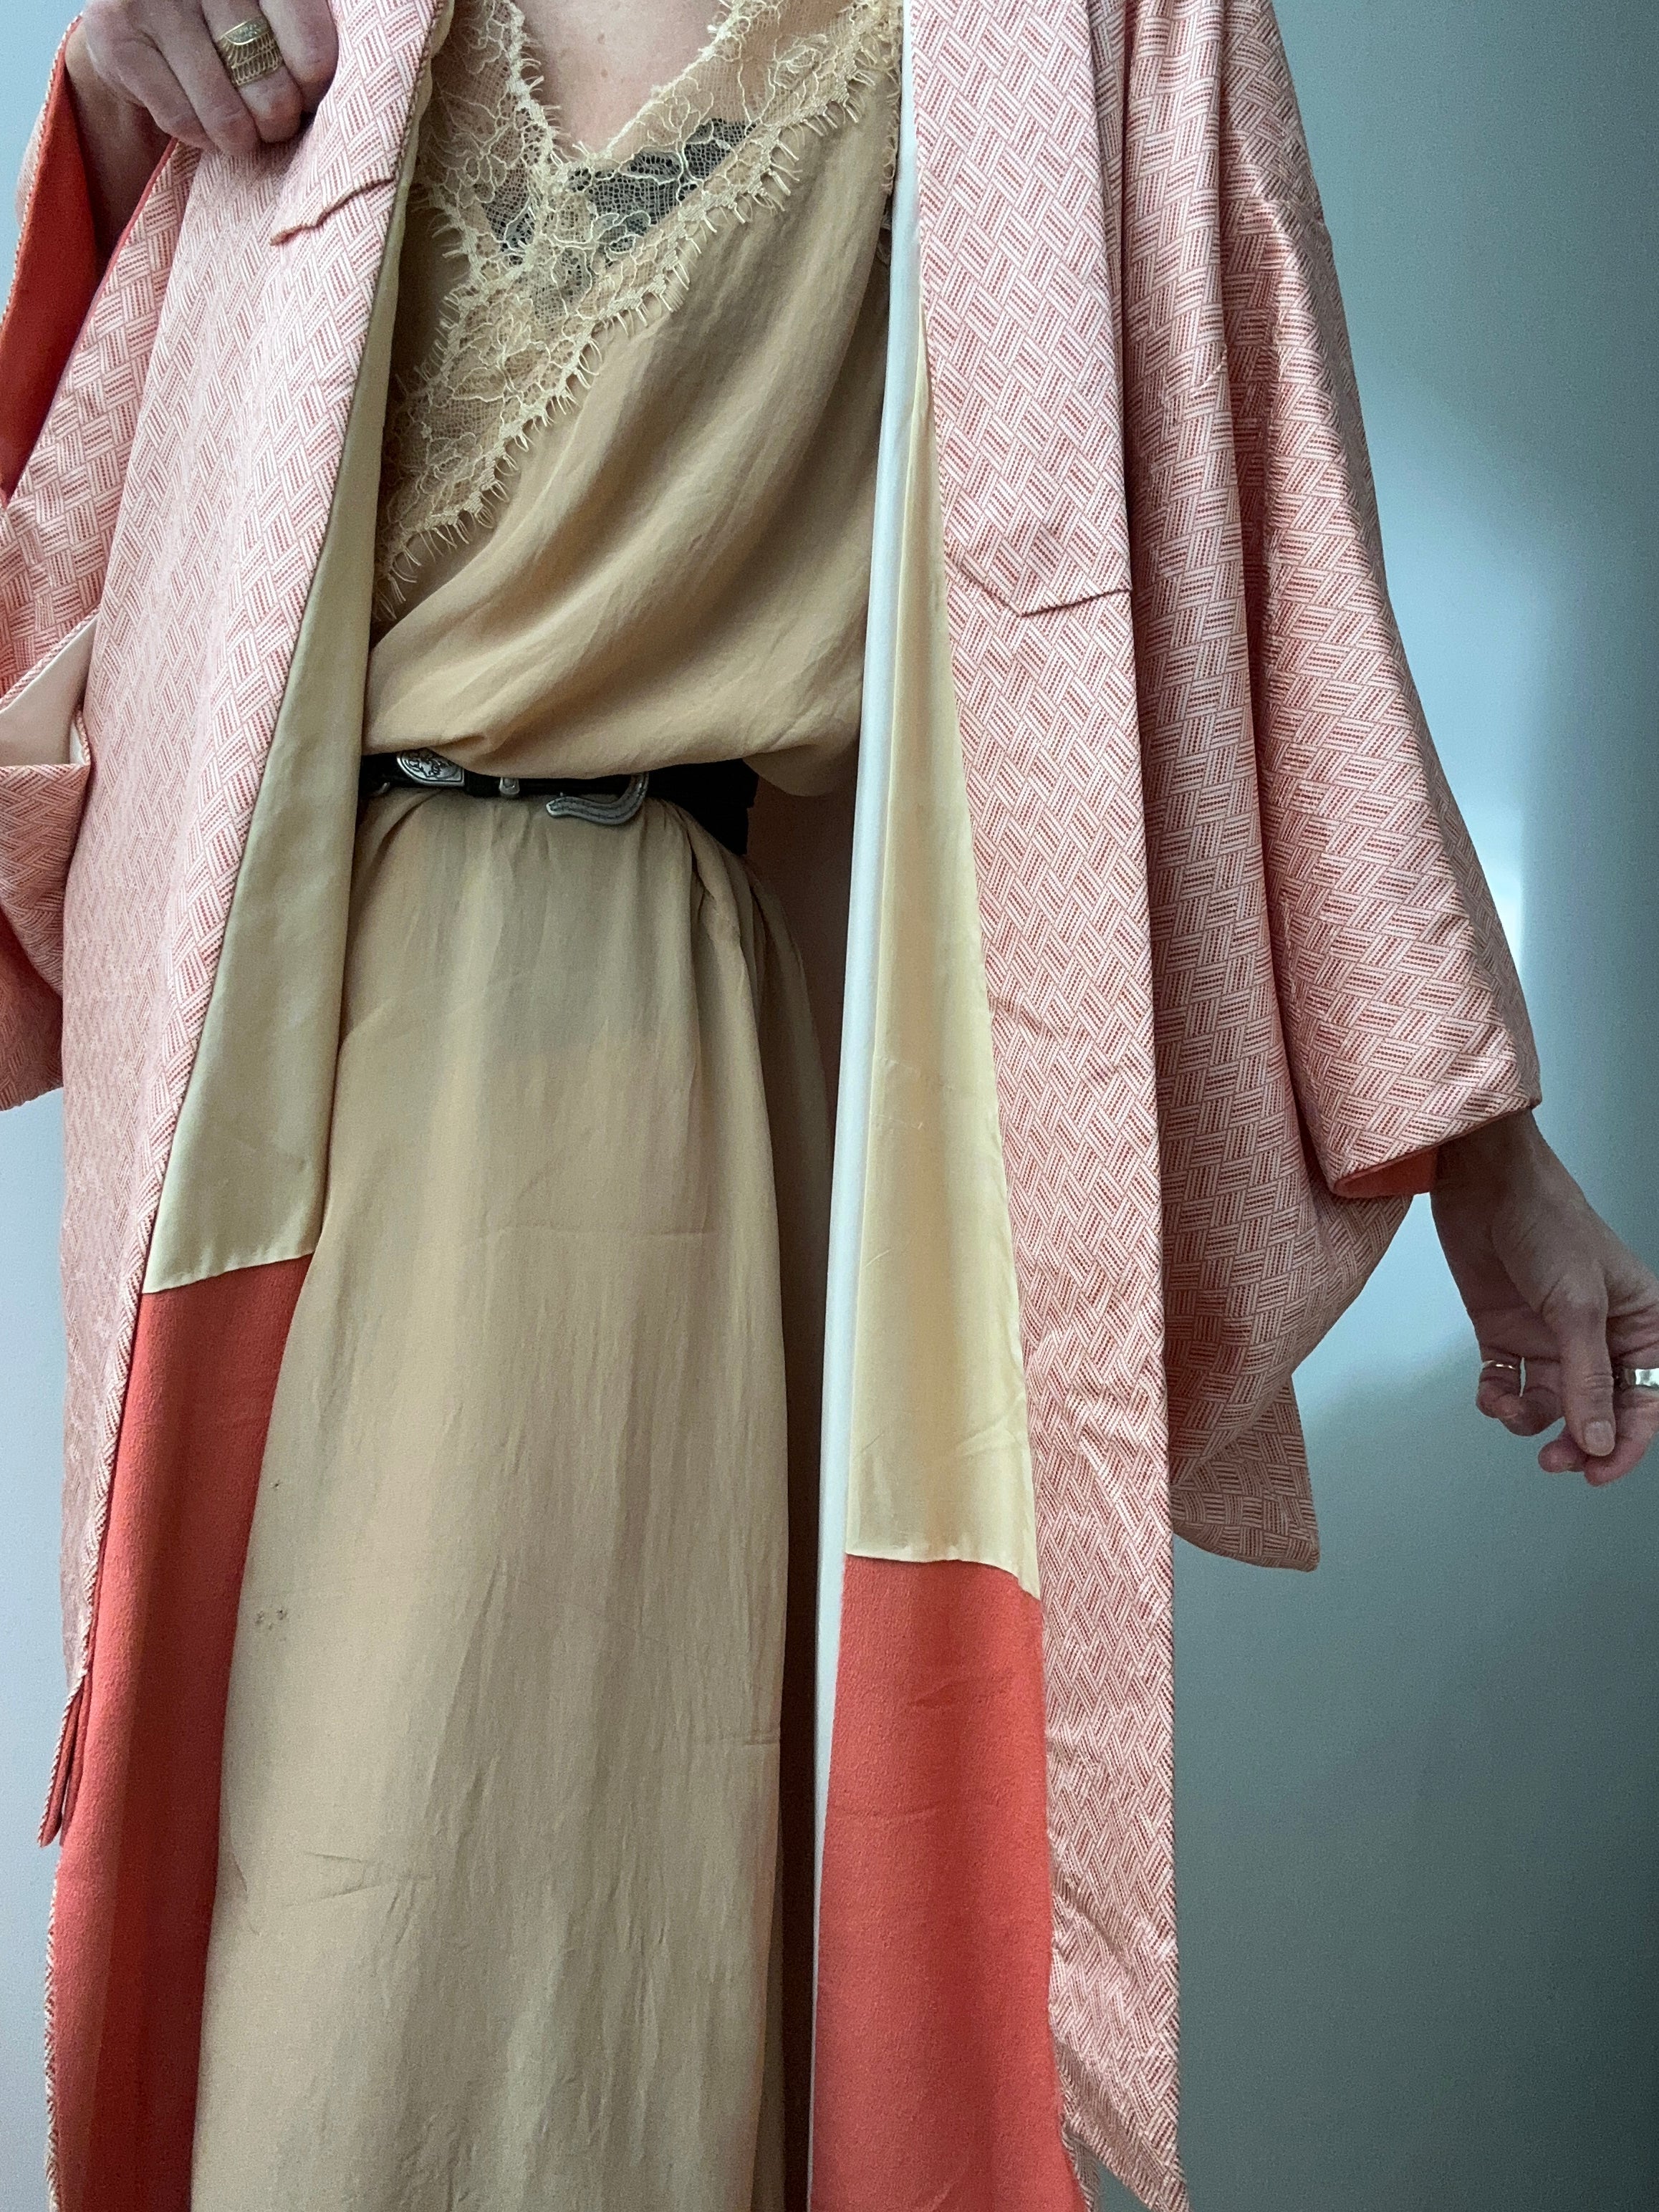 Future Nomads Kimonos Free Size Long Silk Weave Design Kimono